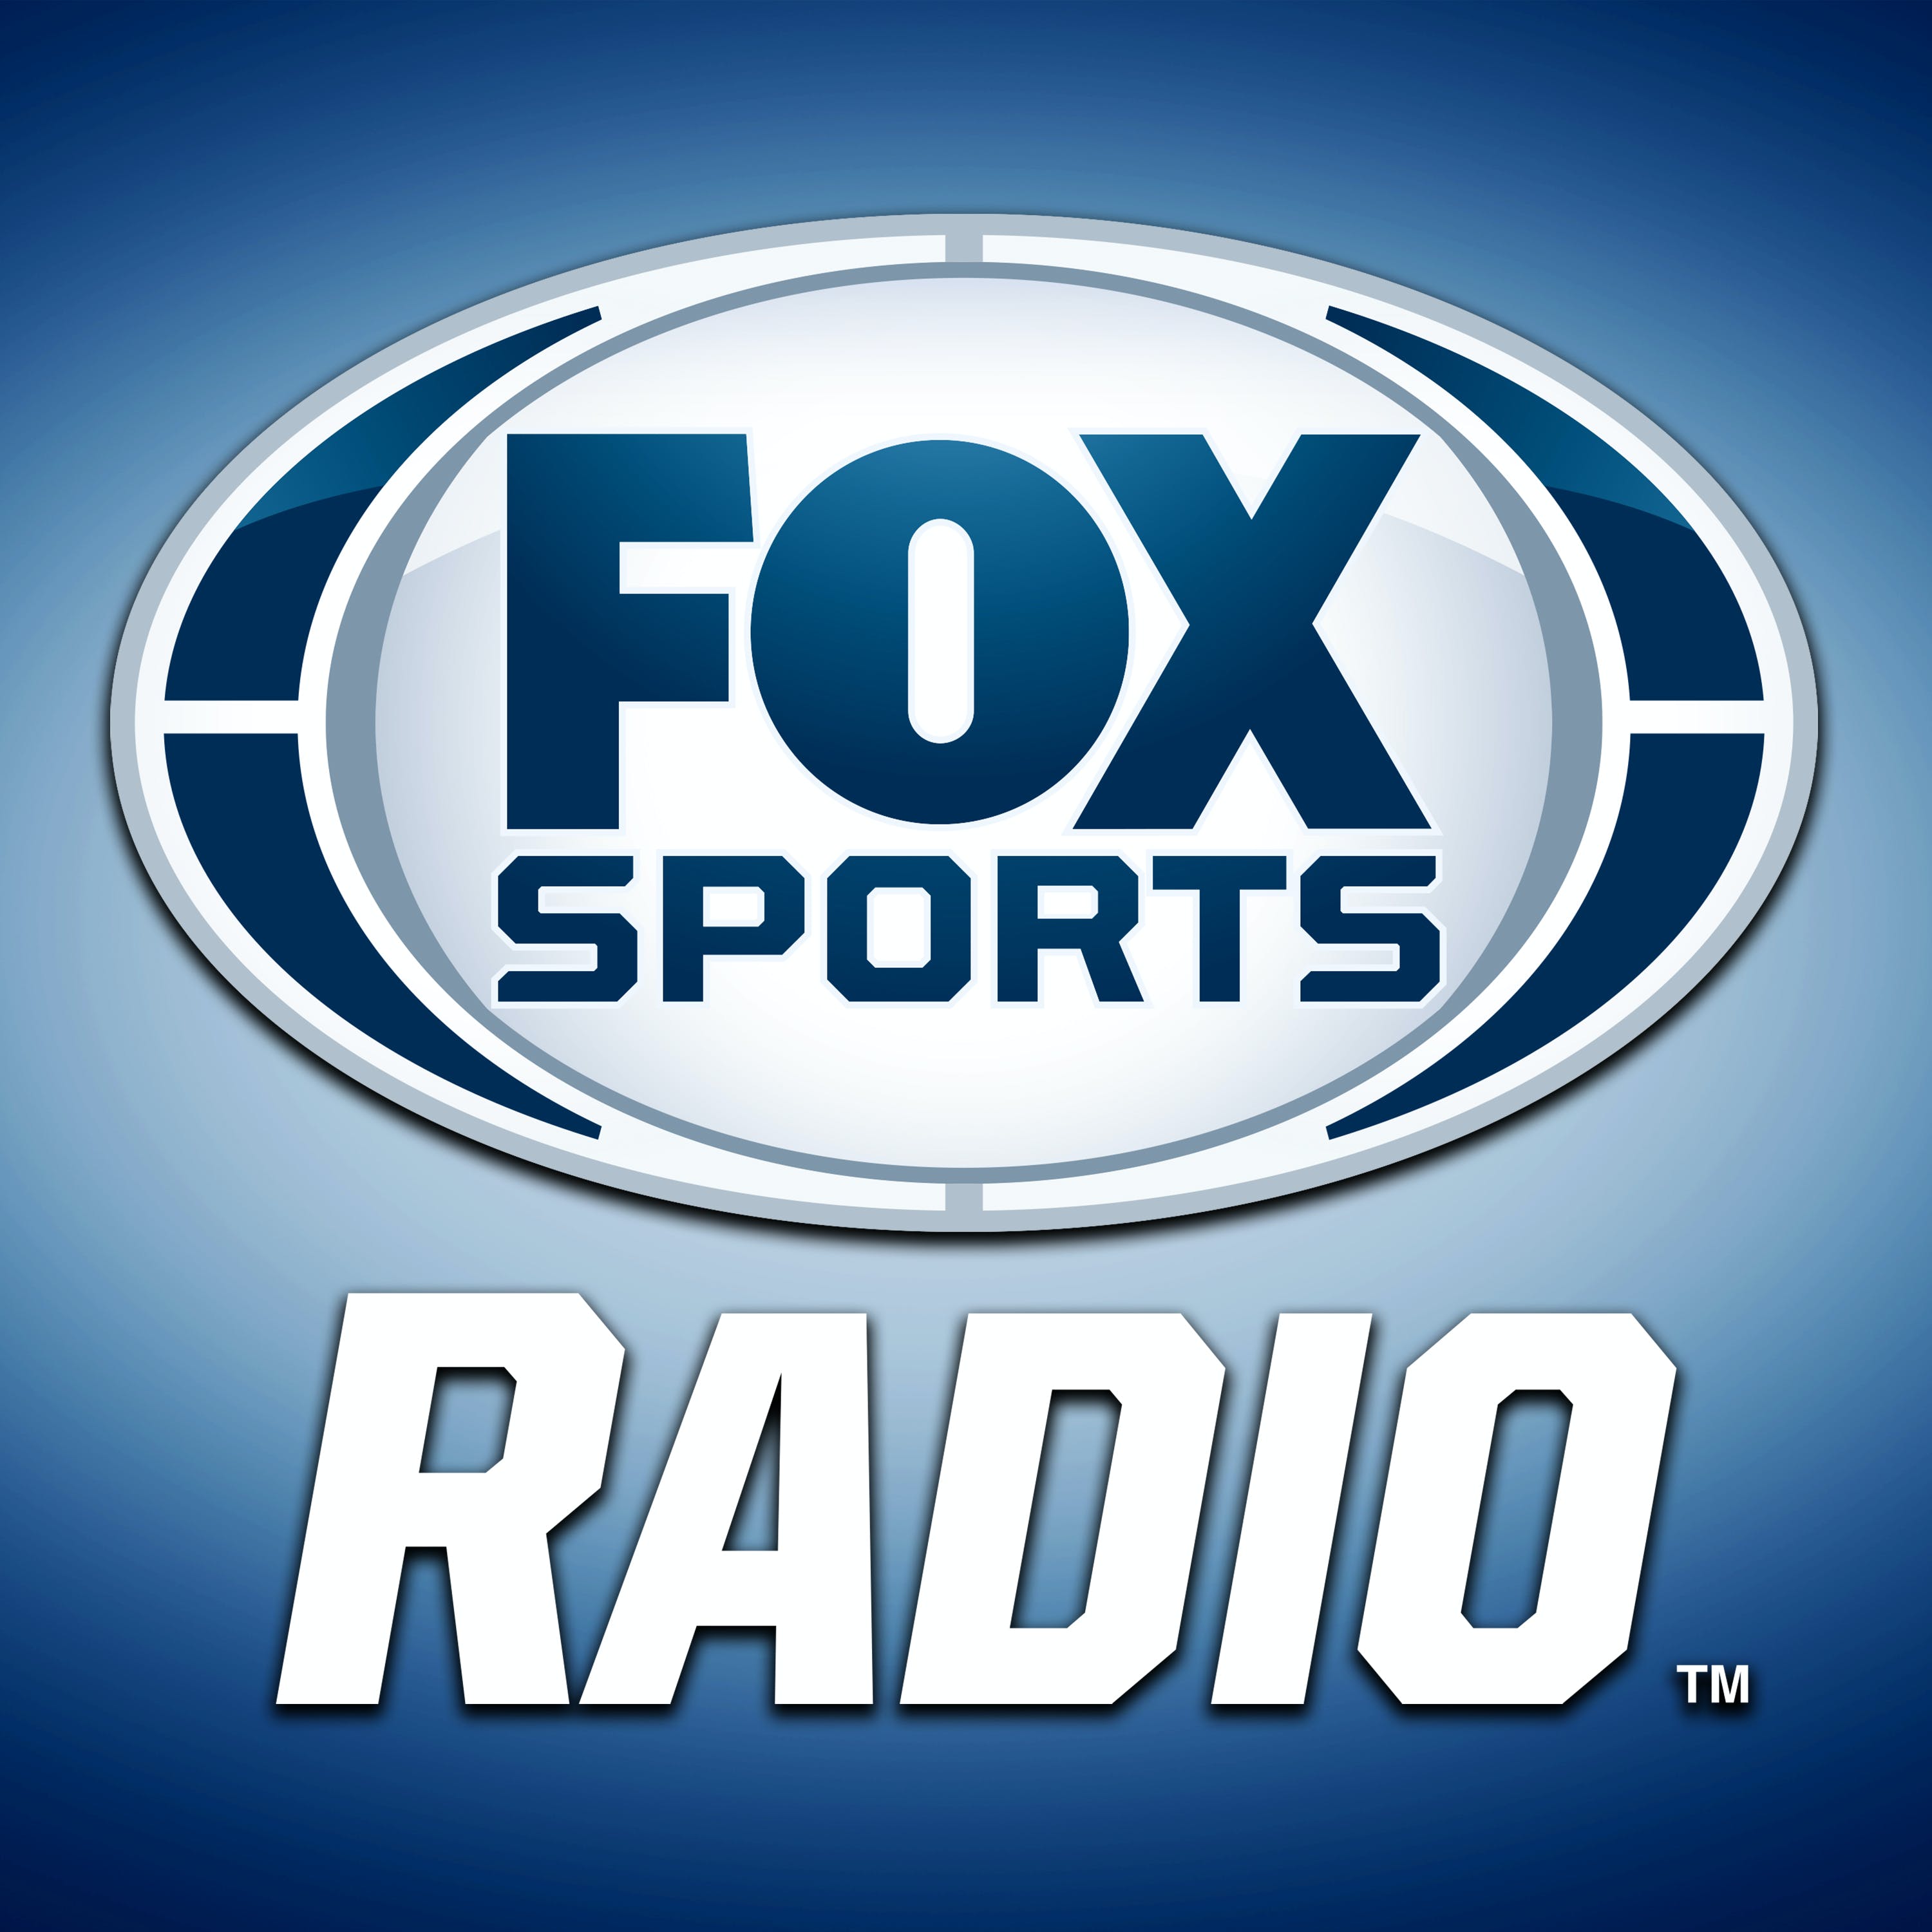 05/22/2021 - FOX Sports Saturday with Steve Hartman and Geoff Schwartz